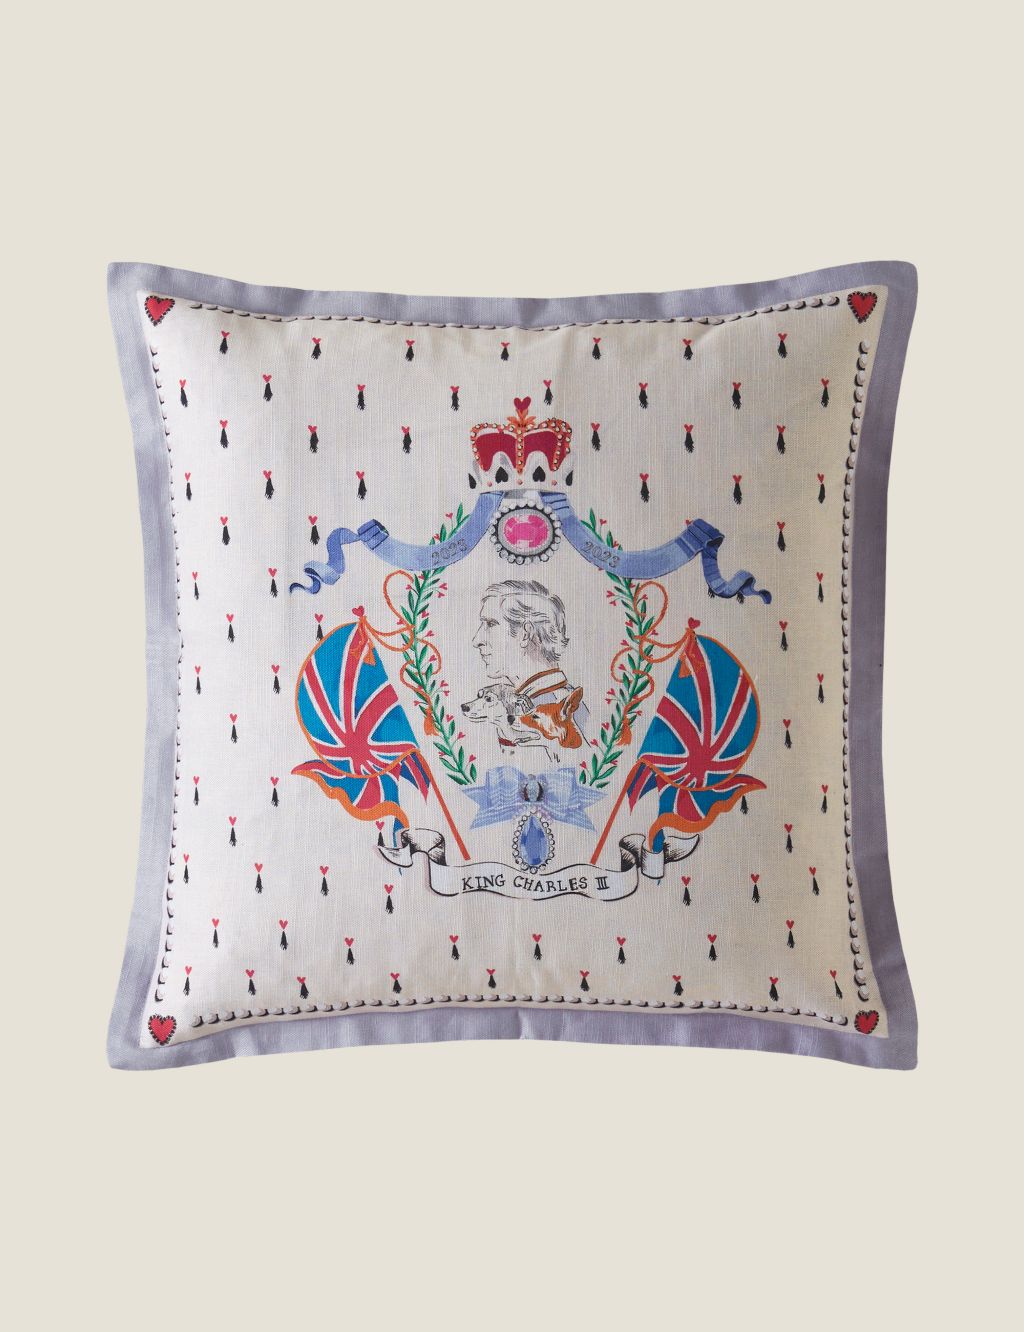 King Charles III Coronation Cushion